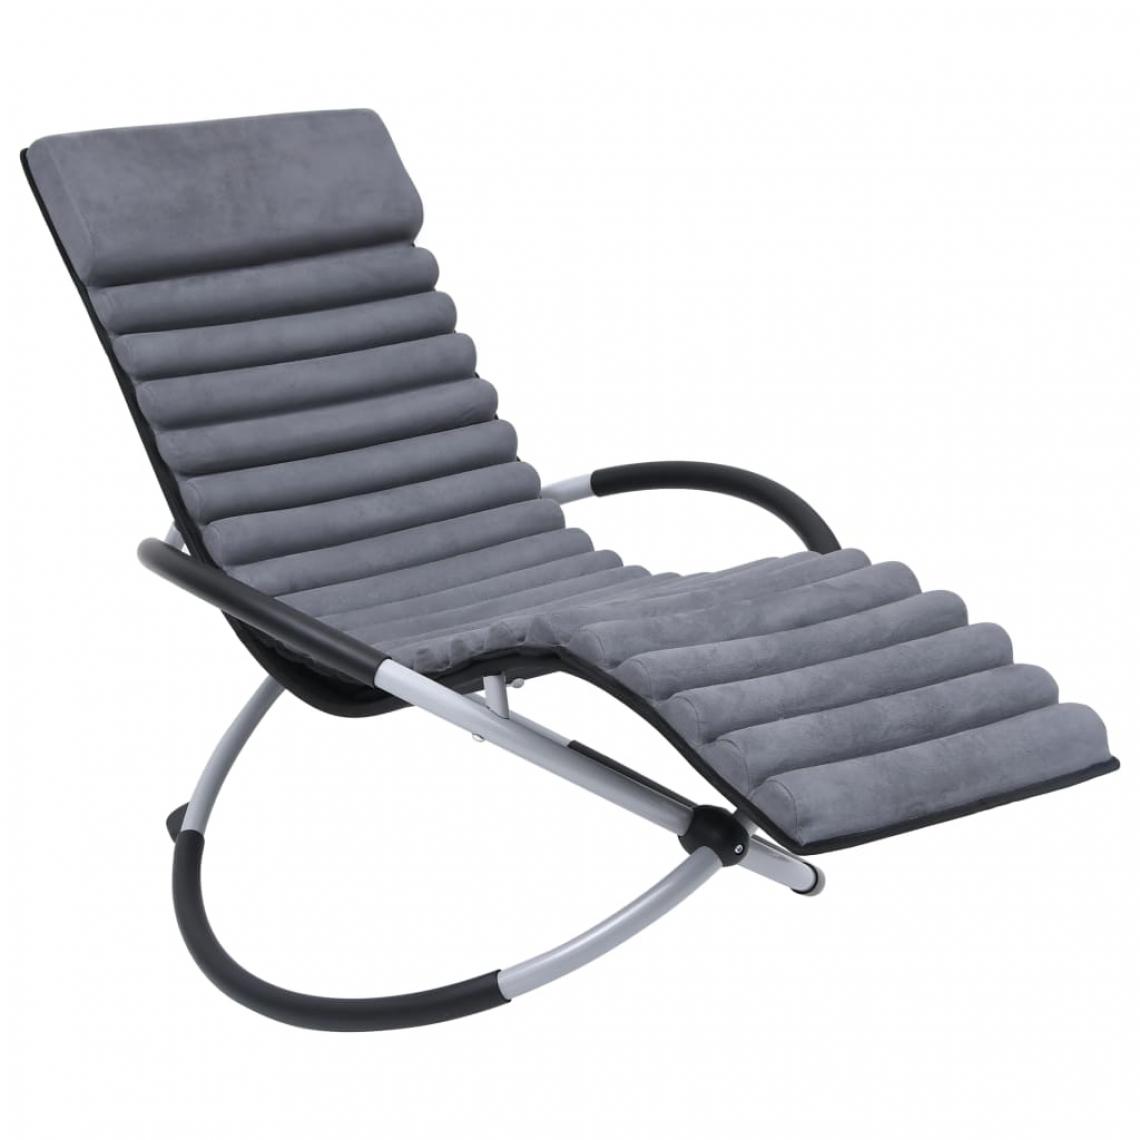 Vidaxl - vidaXL Chaise longue d'extérieur avec coussin Acier Gris - Transats, chaises longues